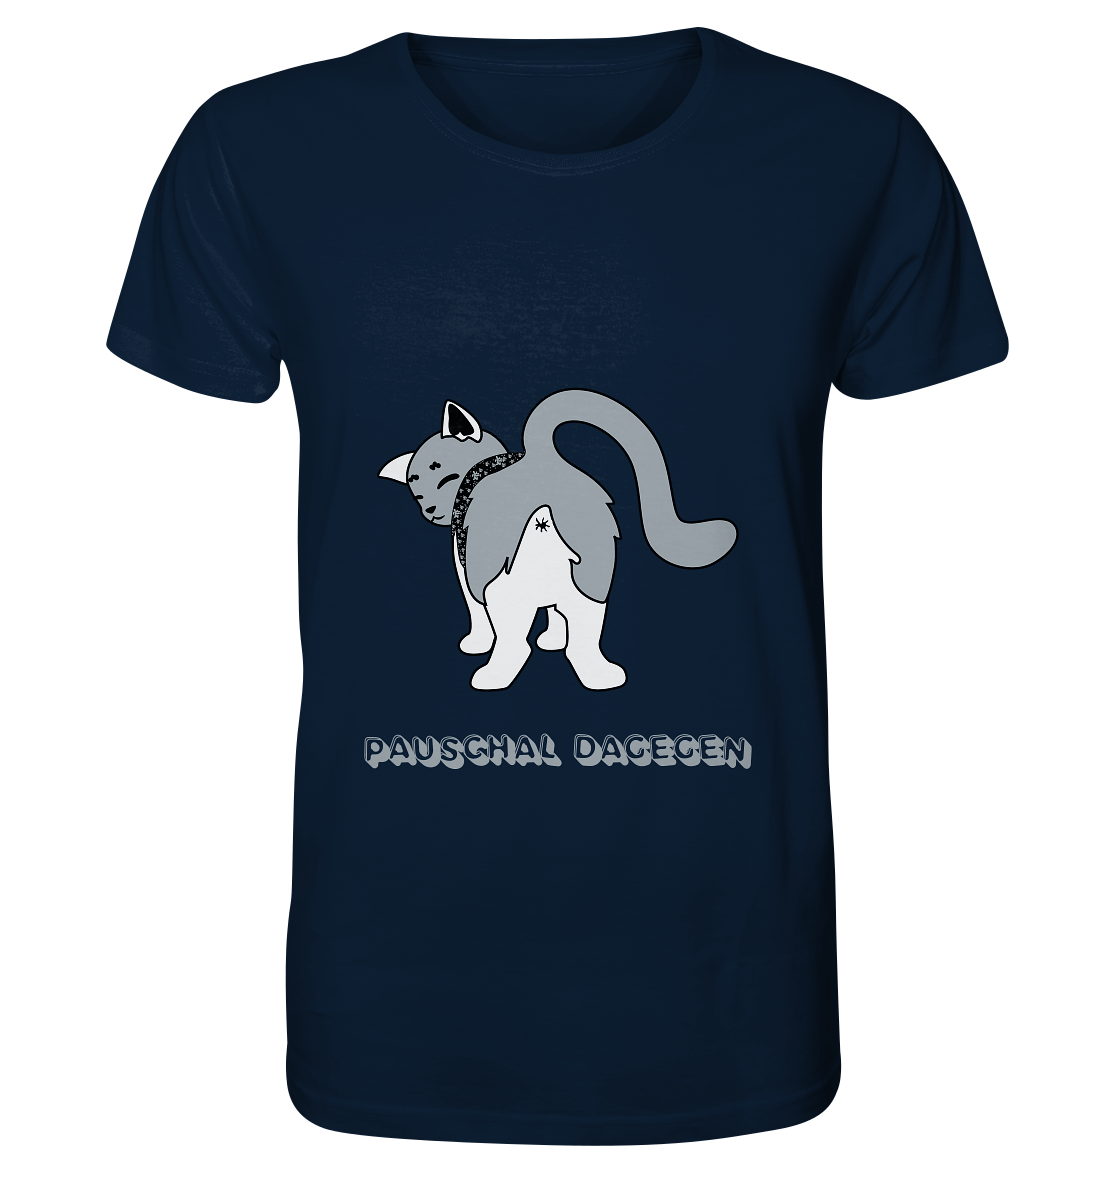 "Pauschal dagegen" mit Katze von hinten - Organic Shirt